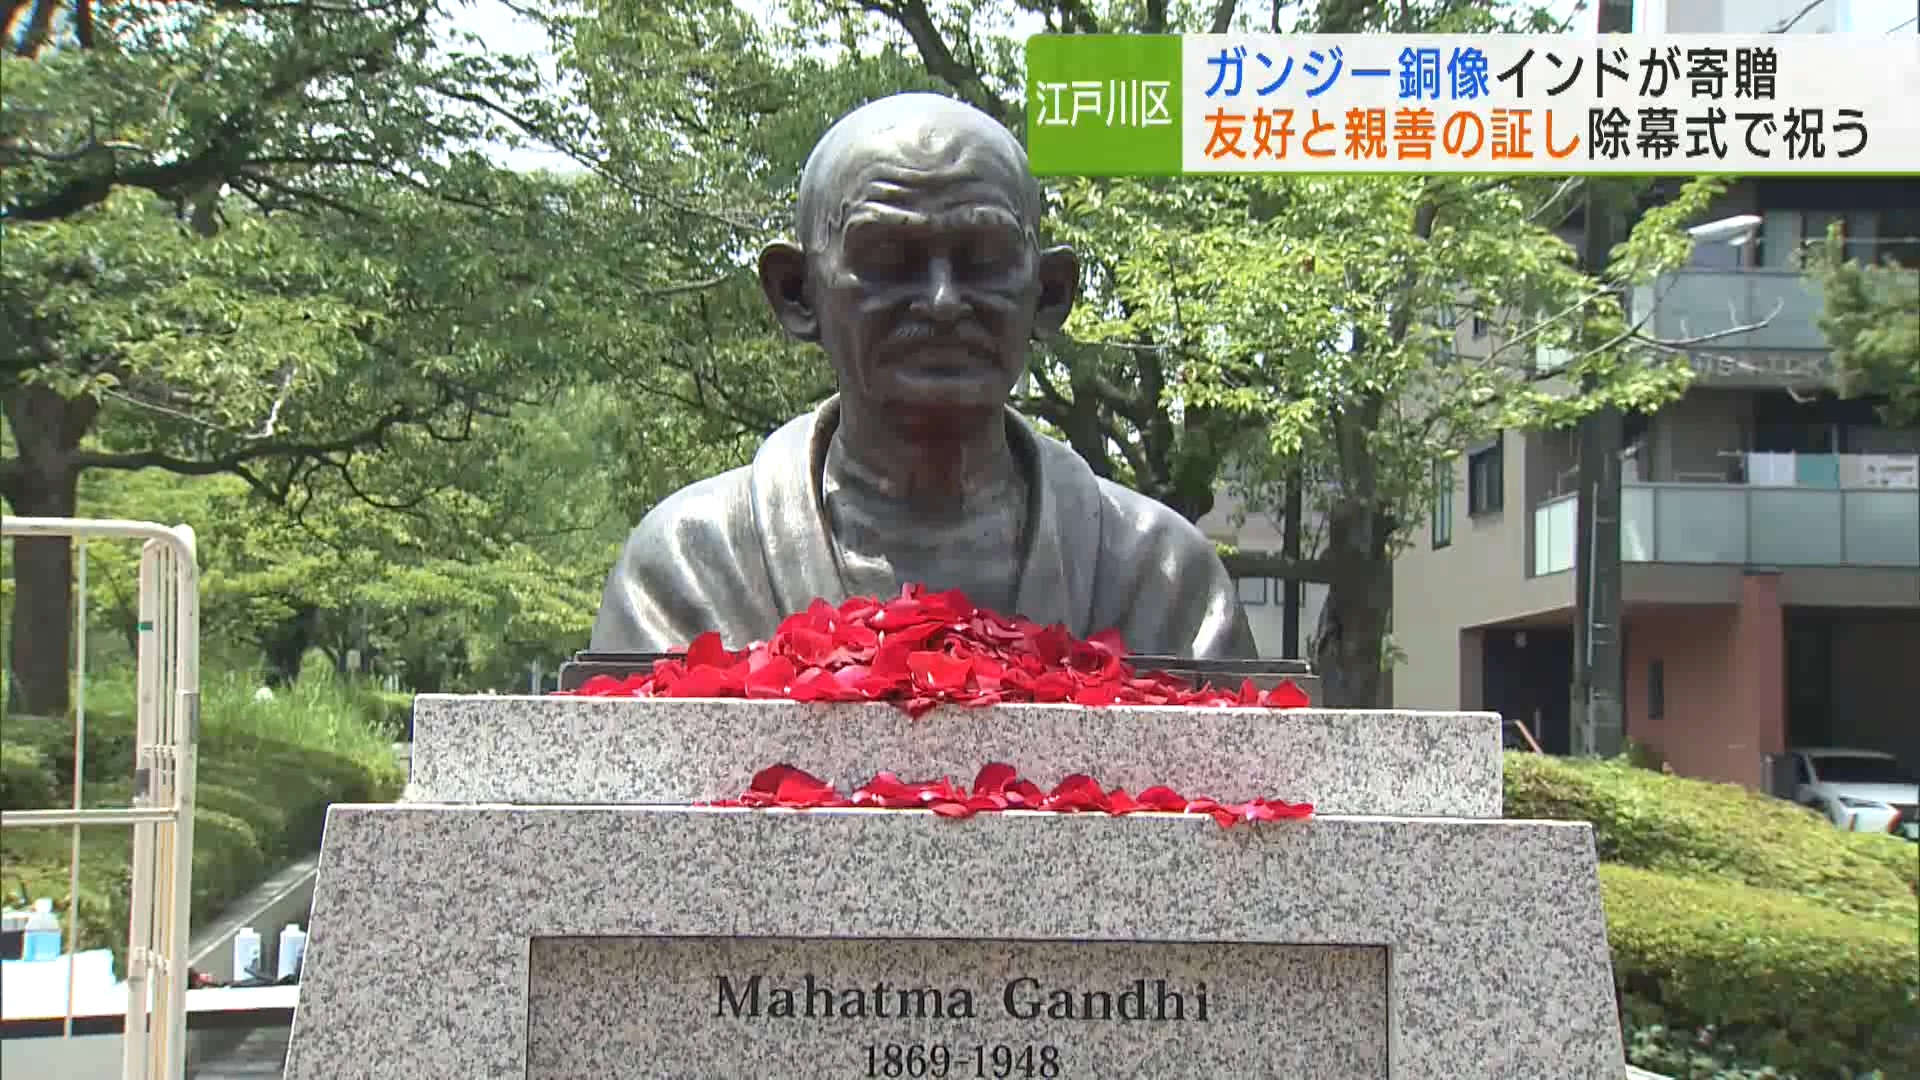 全国の自治体の中で最も多くのインド人が住む東京・江戸川区に、インド政府から友好と親善の証しとして「ガンジー」の銅像が寄贈され、区内の公園で除幕式が行われました。